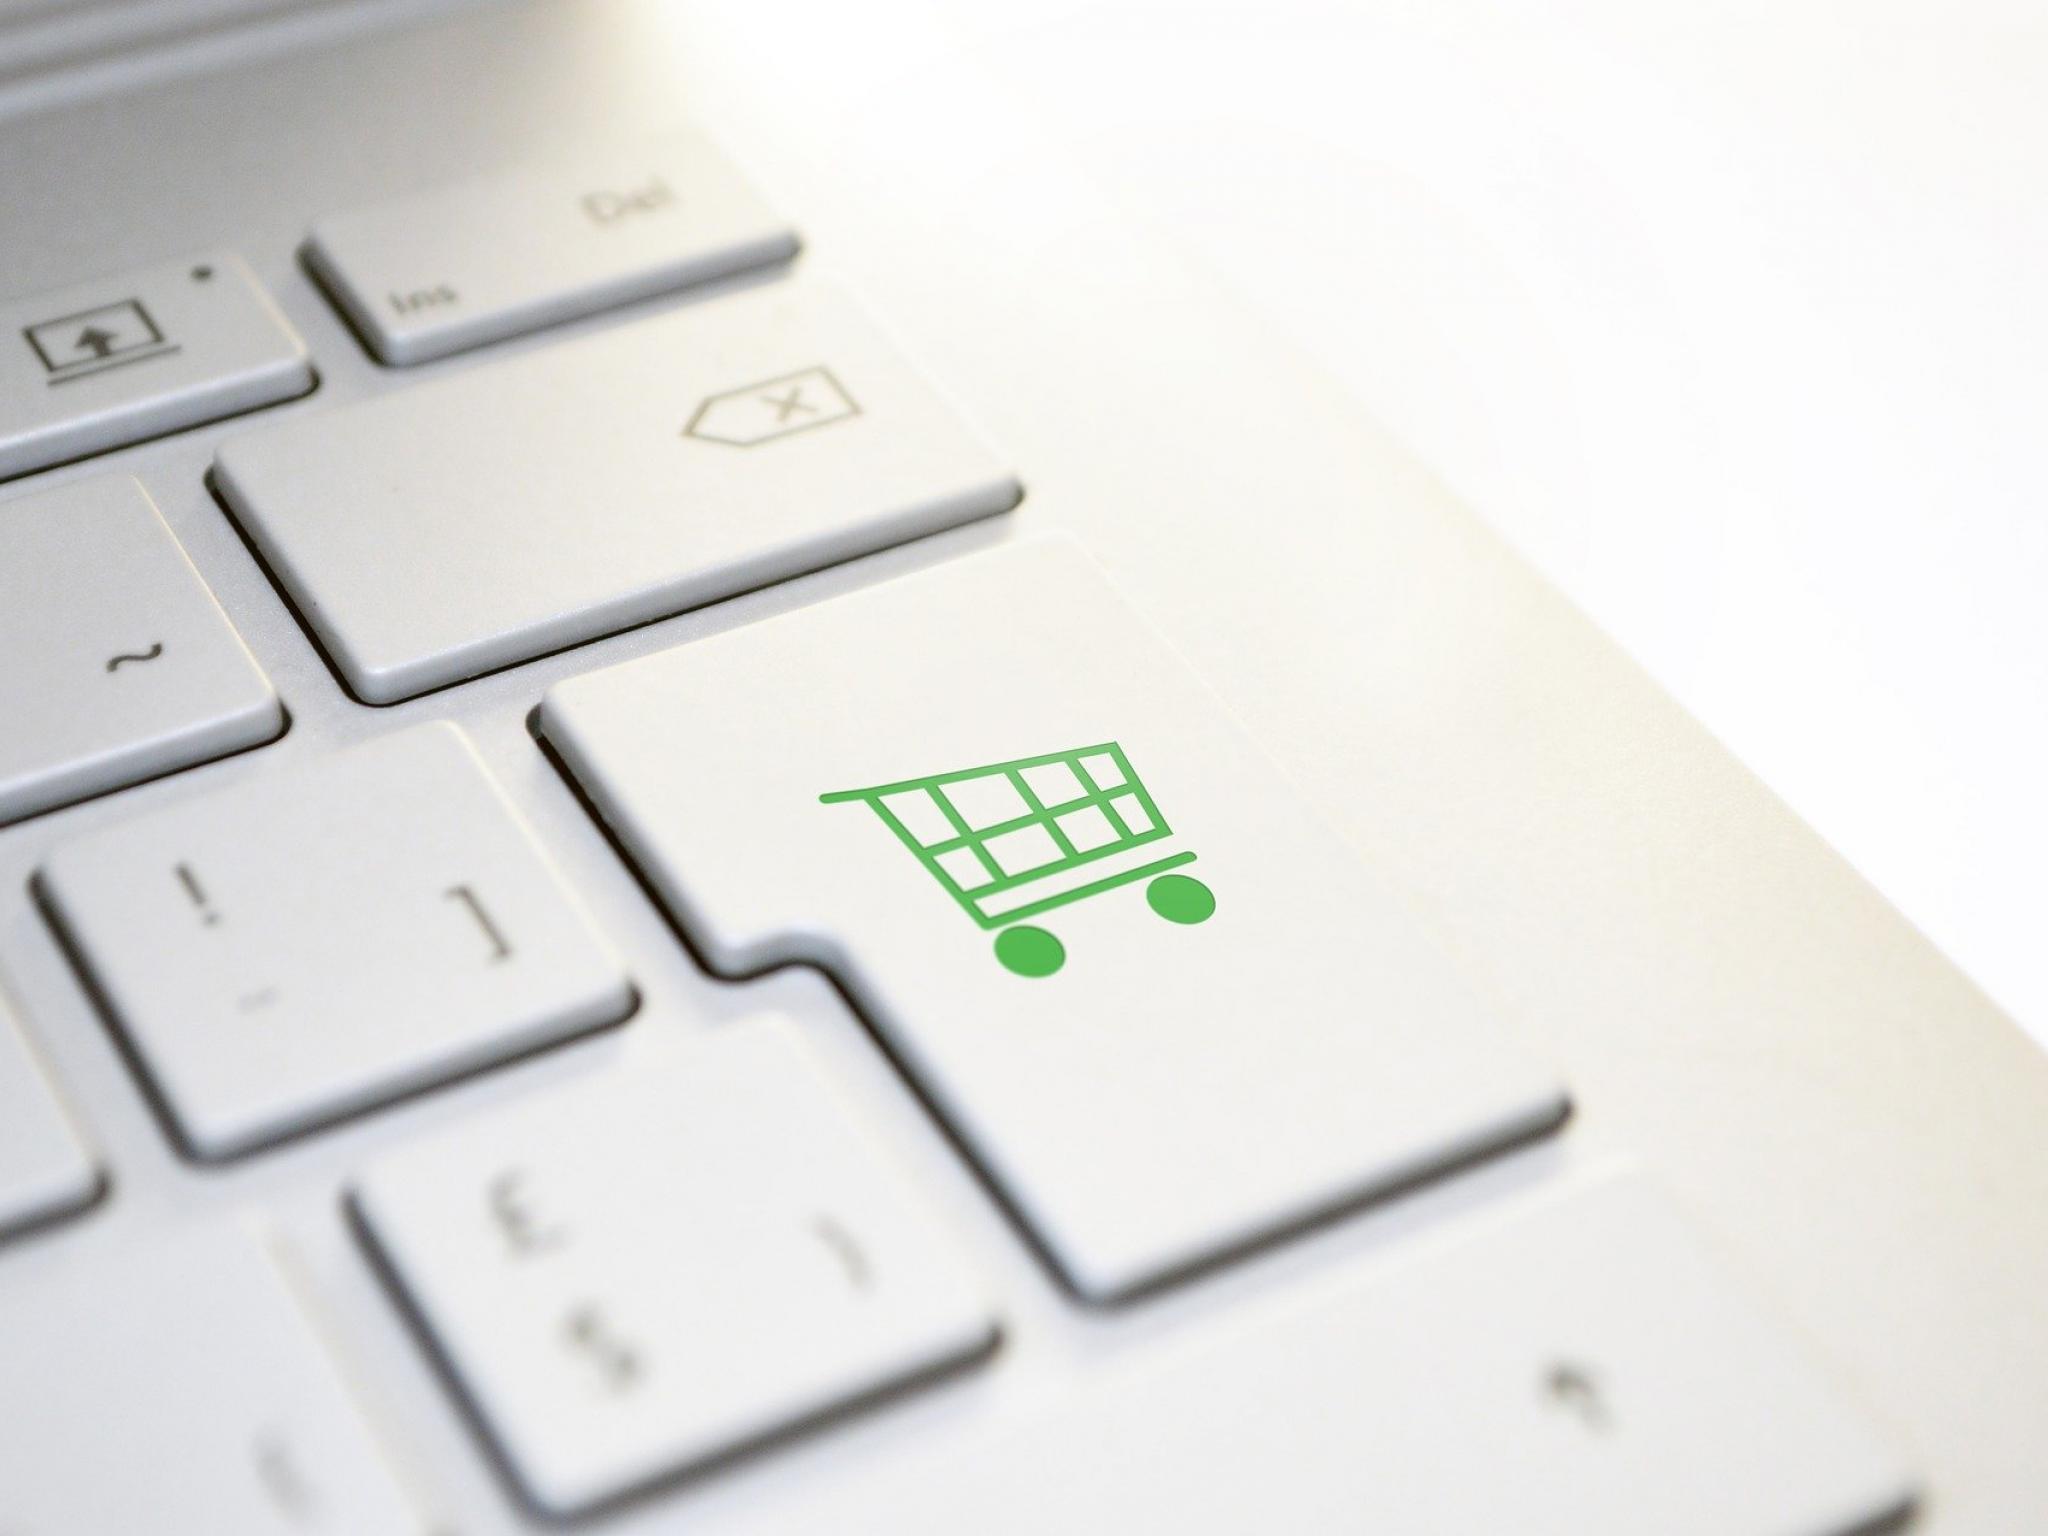  3-e-commerce-etfs-for-the-online-shopping-boom 